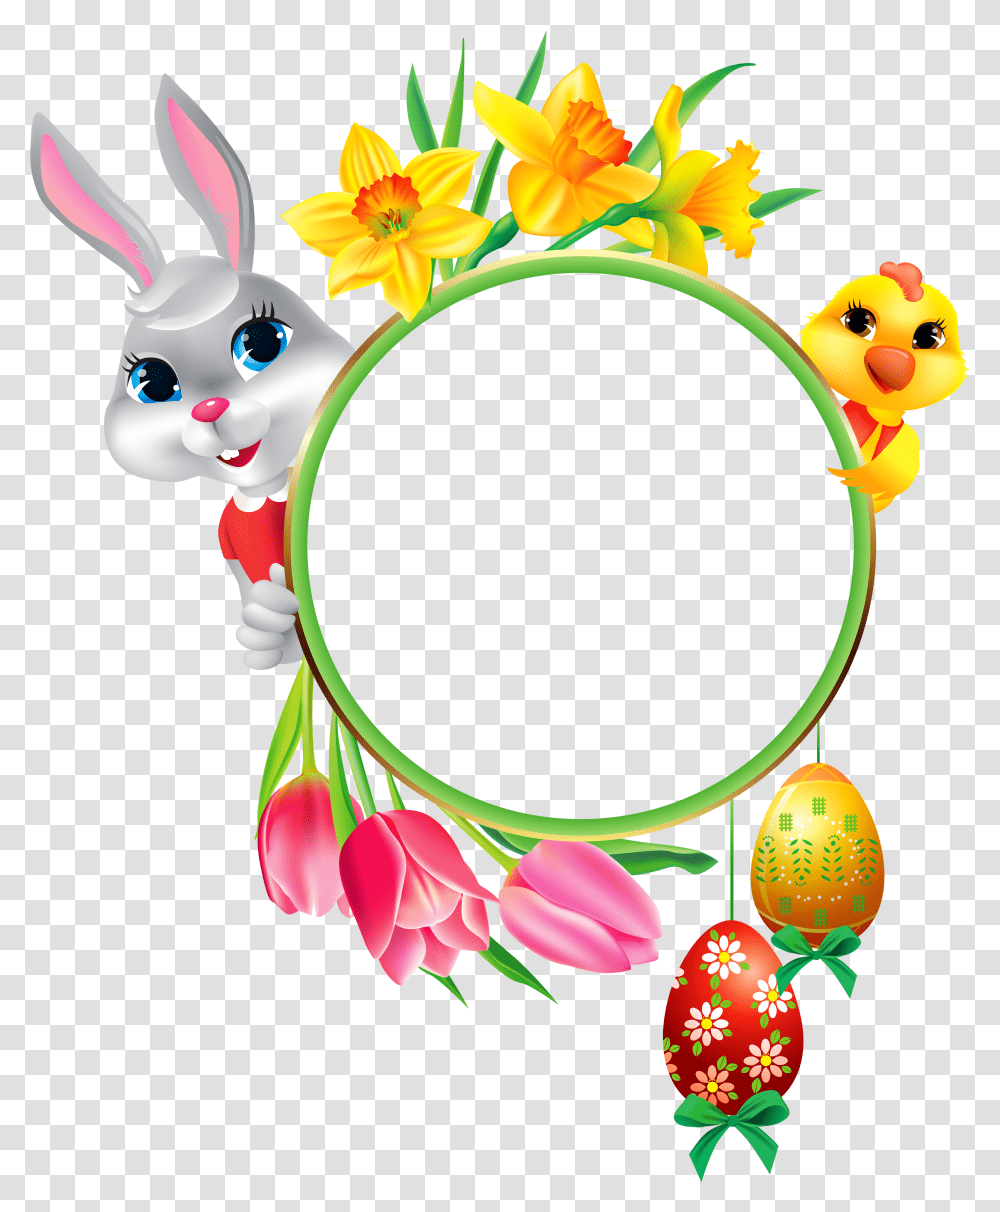 Easter Images Easter Frame Clip Art, Egg, Food, Floral Design Transparent Png